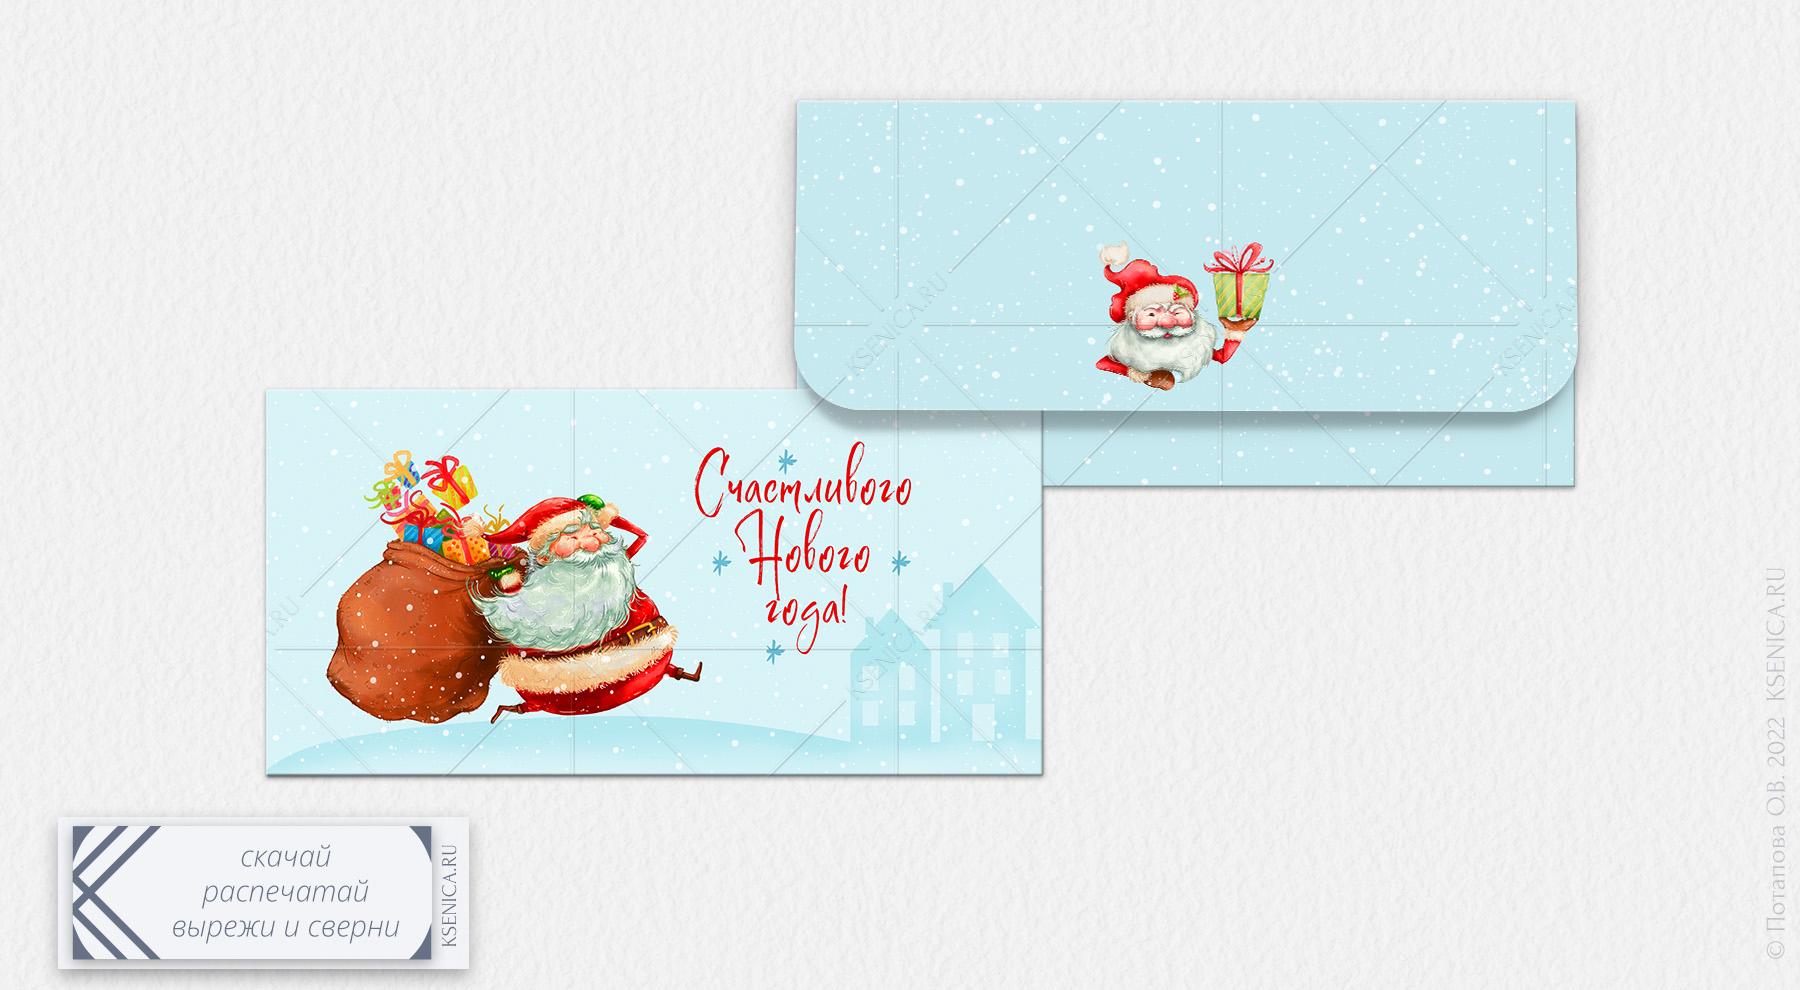 Шаблоны, фоны, обои для новогодних открыток и картинок на Новый Год